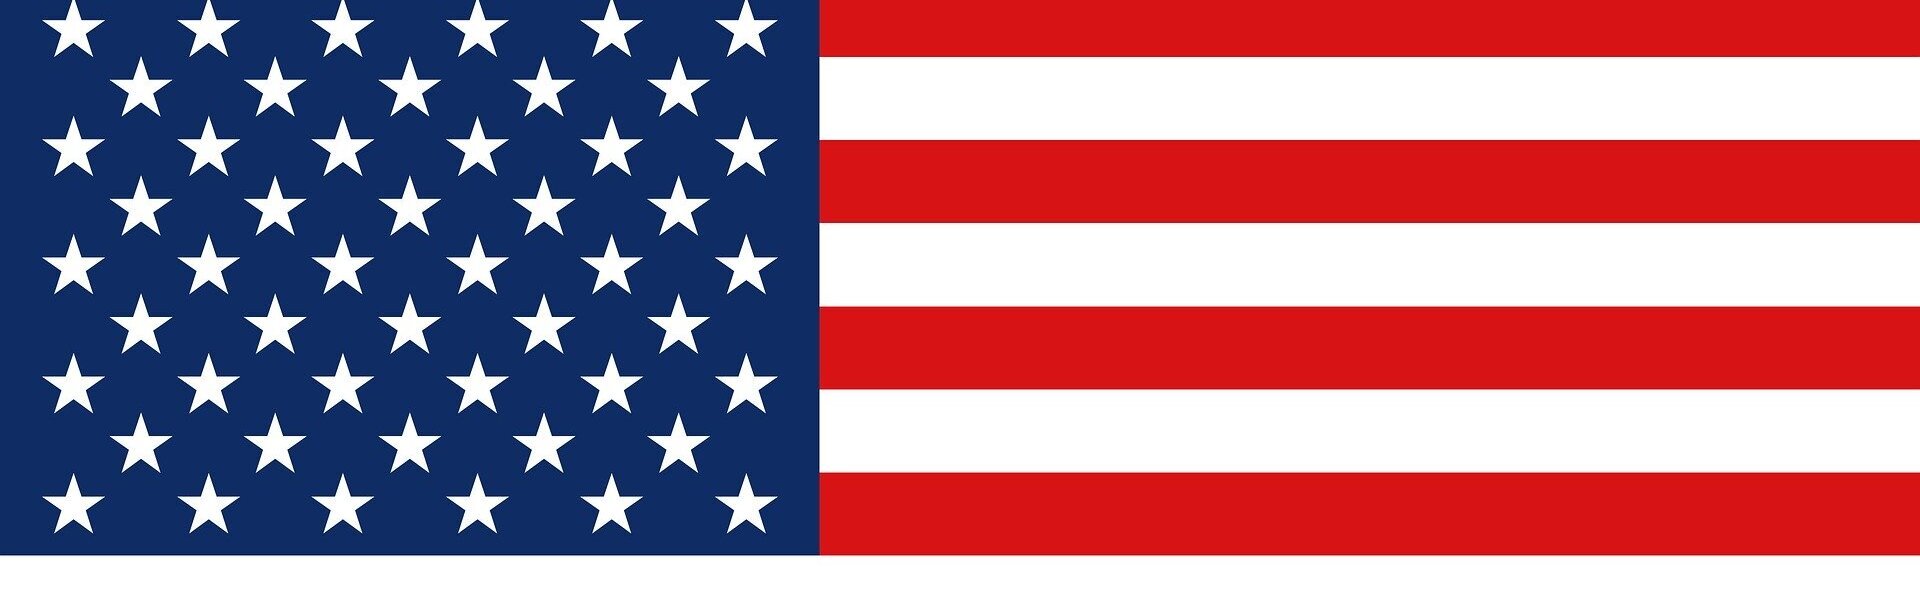 DAs Bild zeigt die Flagge USA